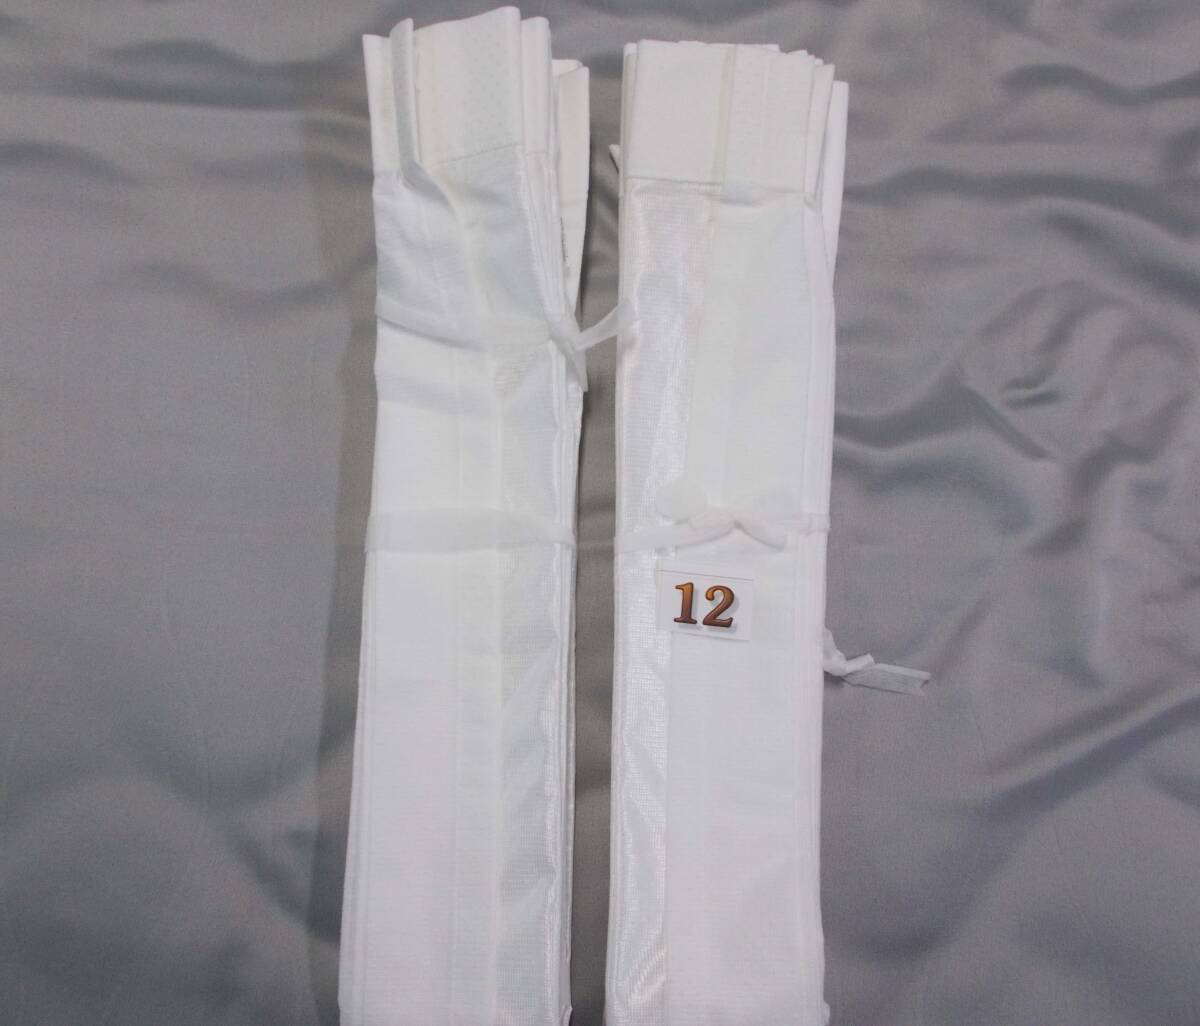 ミラーレースカーテン2枚組 90×109cm オーダーカーテンの採寸を間違った商品の処分 R12-1の画像1